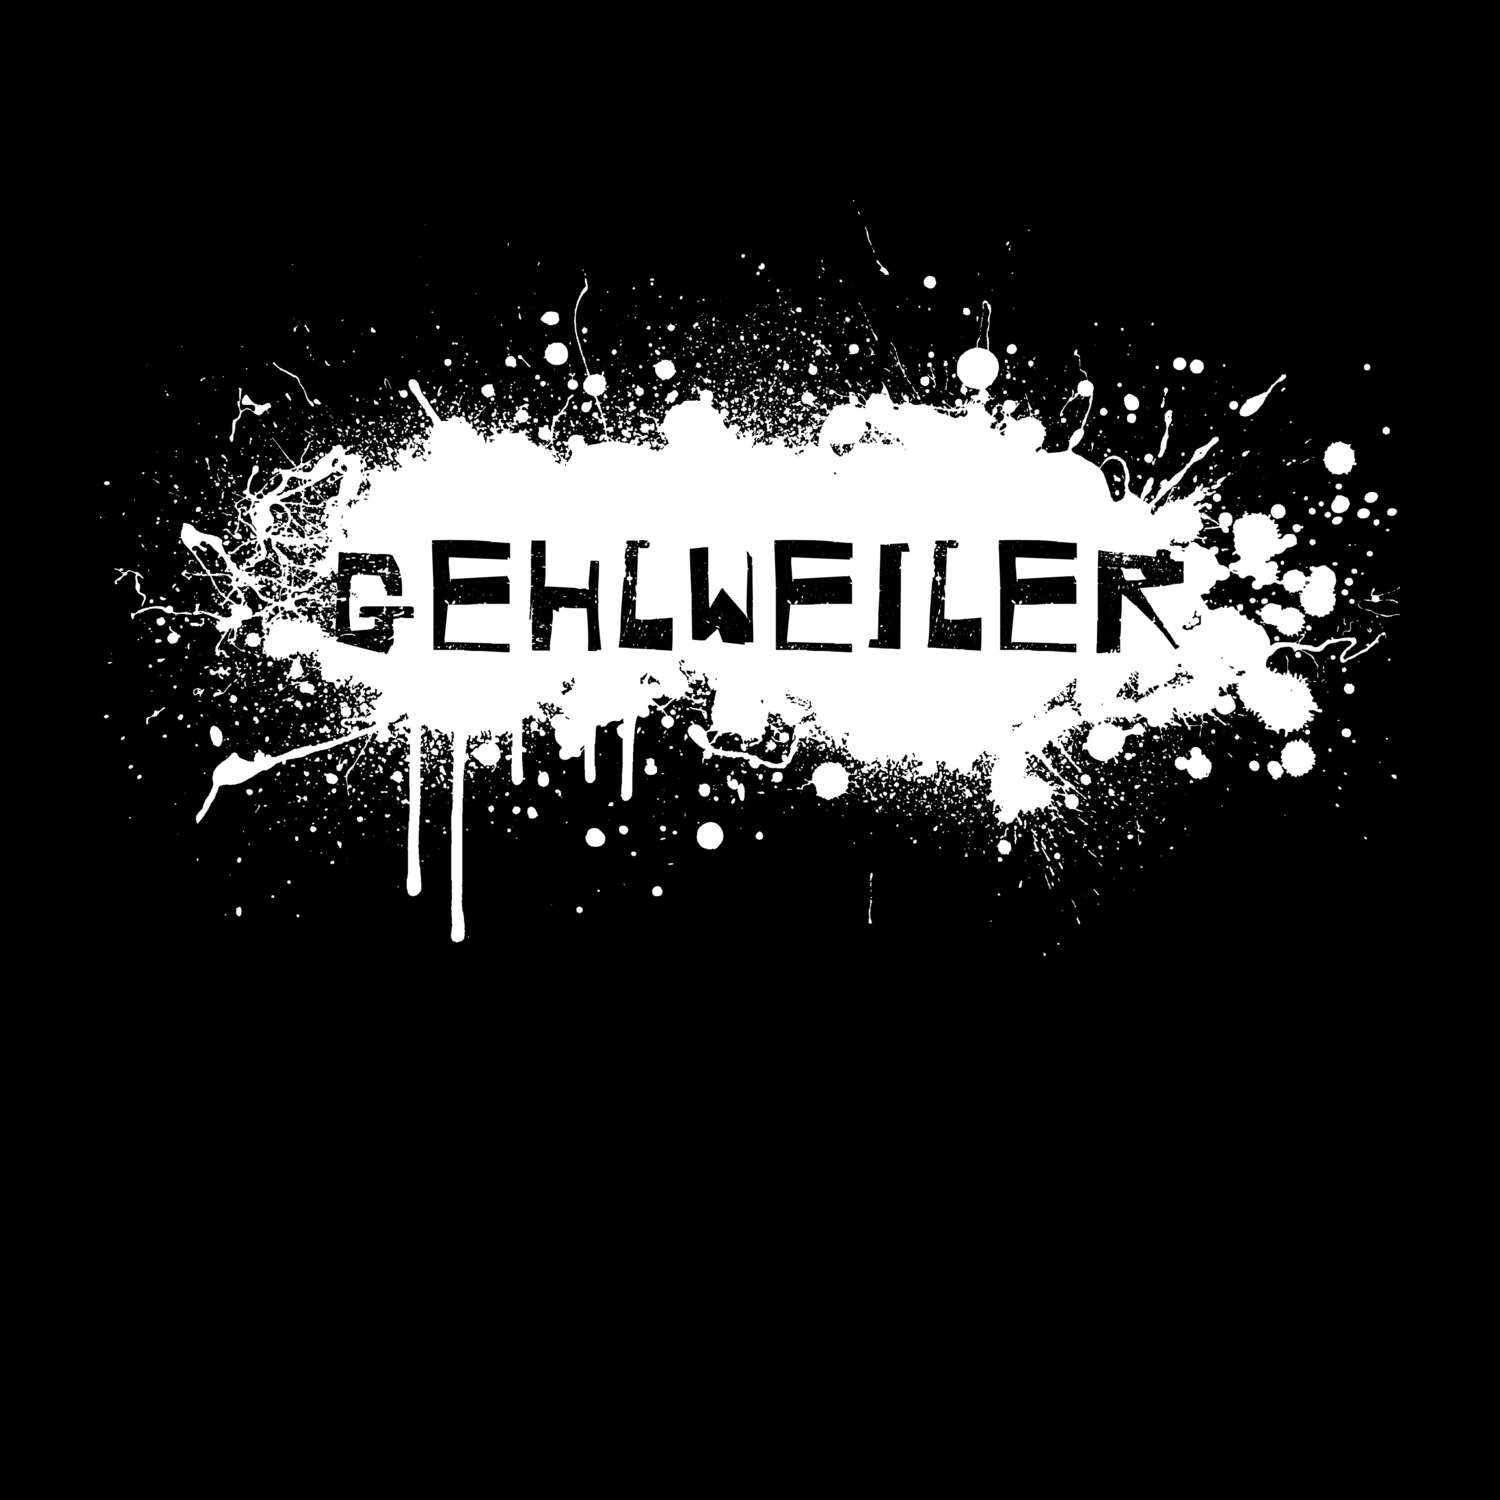 Gehlweiler T-Shirt »Paint Splash Punk«